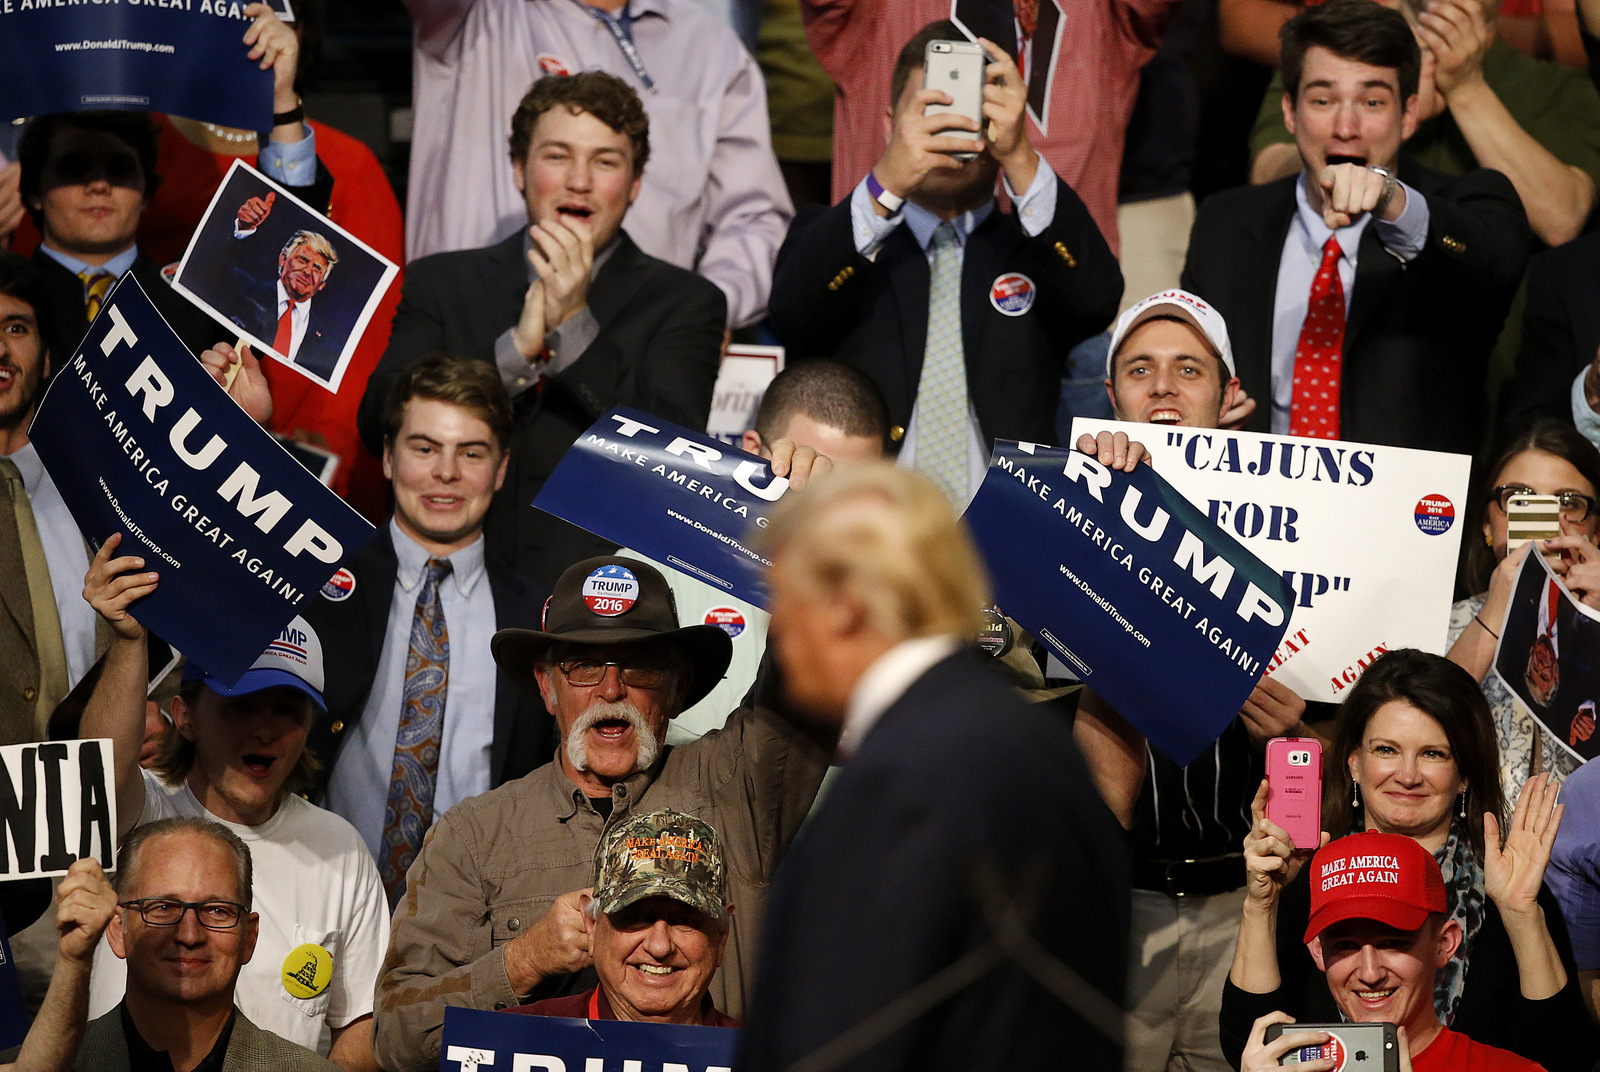 La multitud aplaude mientras el candidato presidencial republicano Donald Trump habla en un mitin de campaña en Baton Rouge, Luisiana, el jueves 11 de febrero de 2016. (Foto AP / Gerald Herbert)